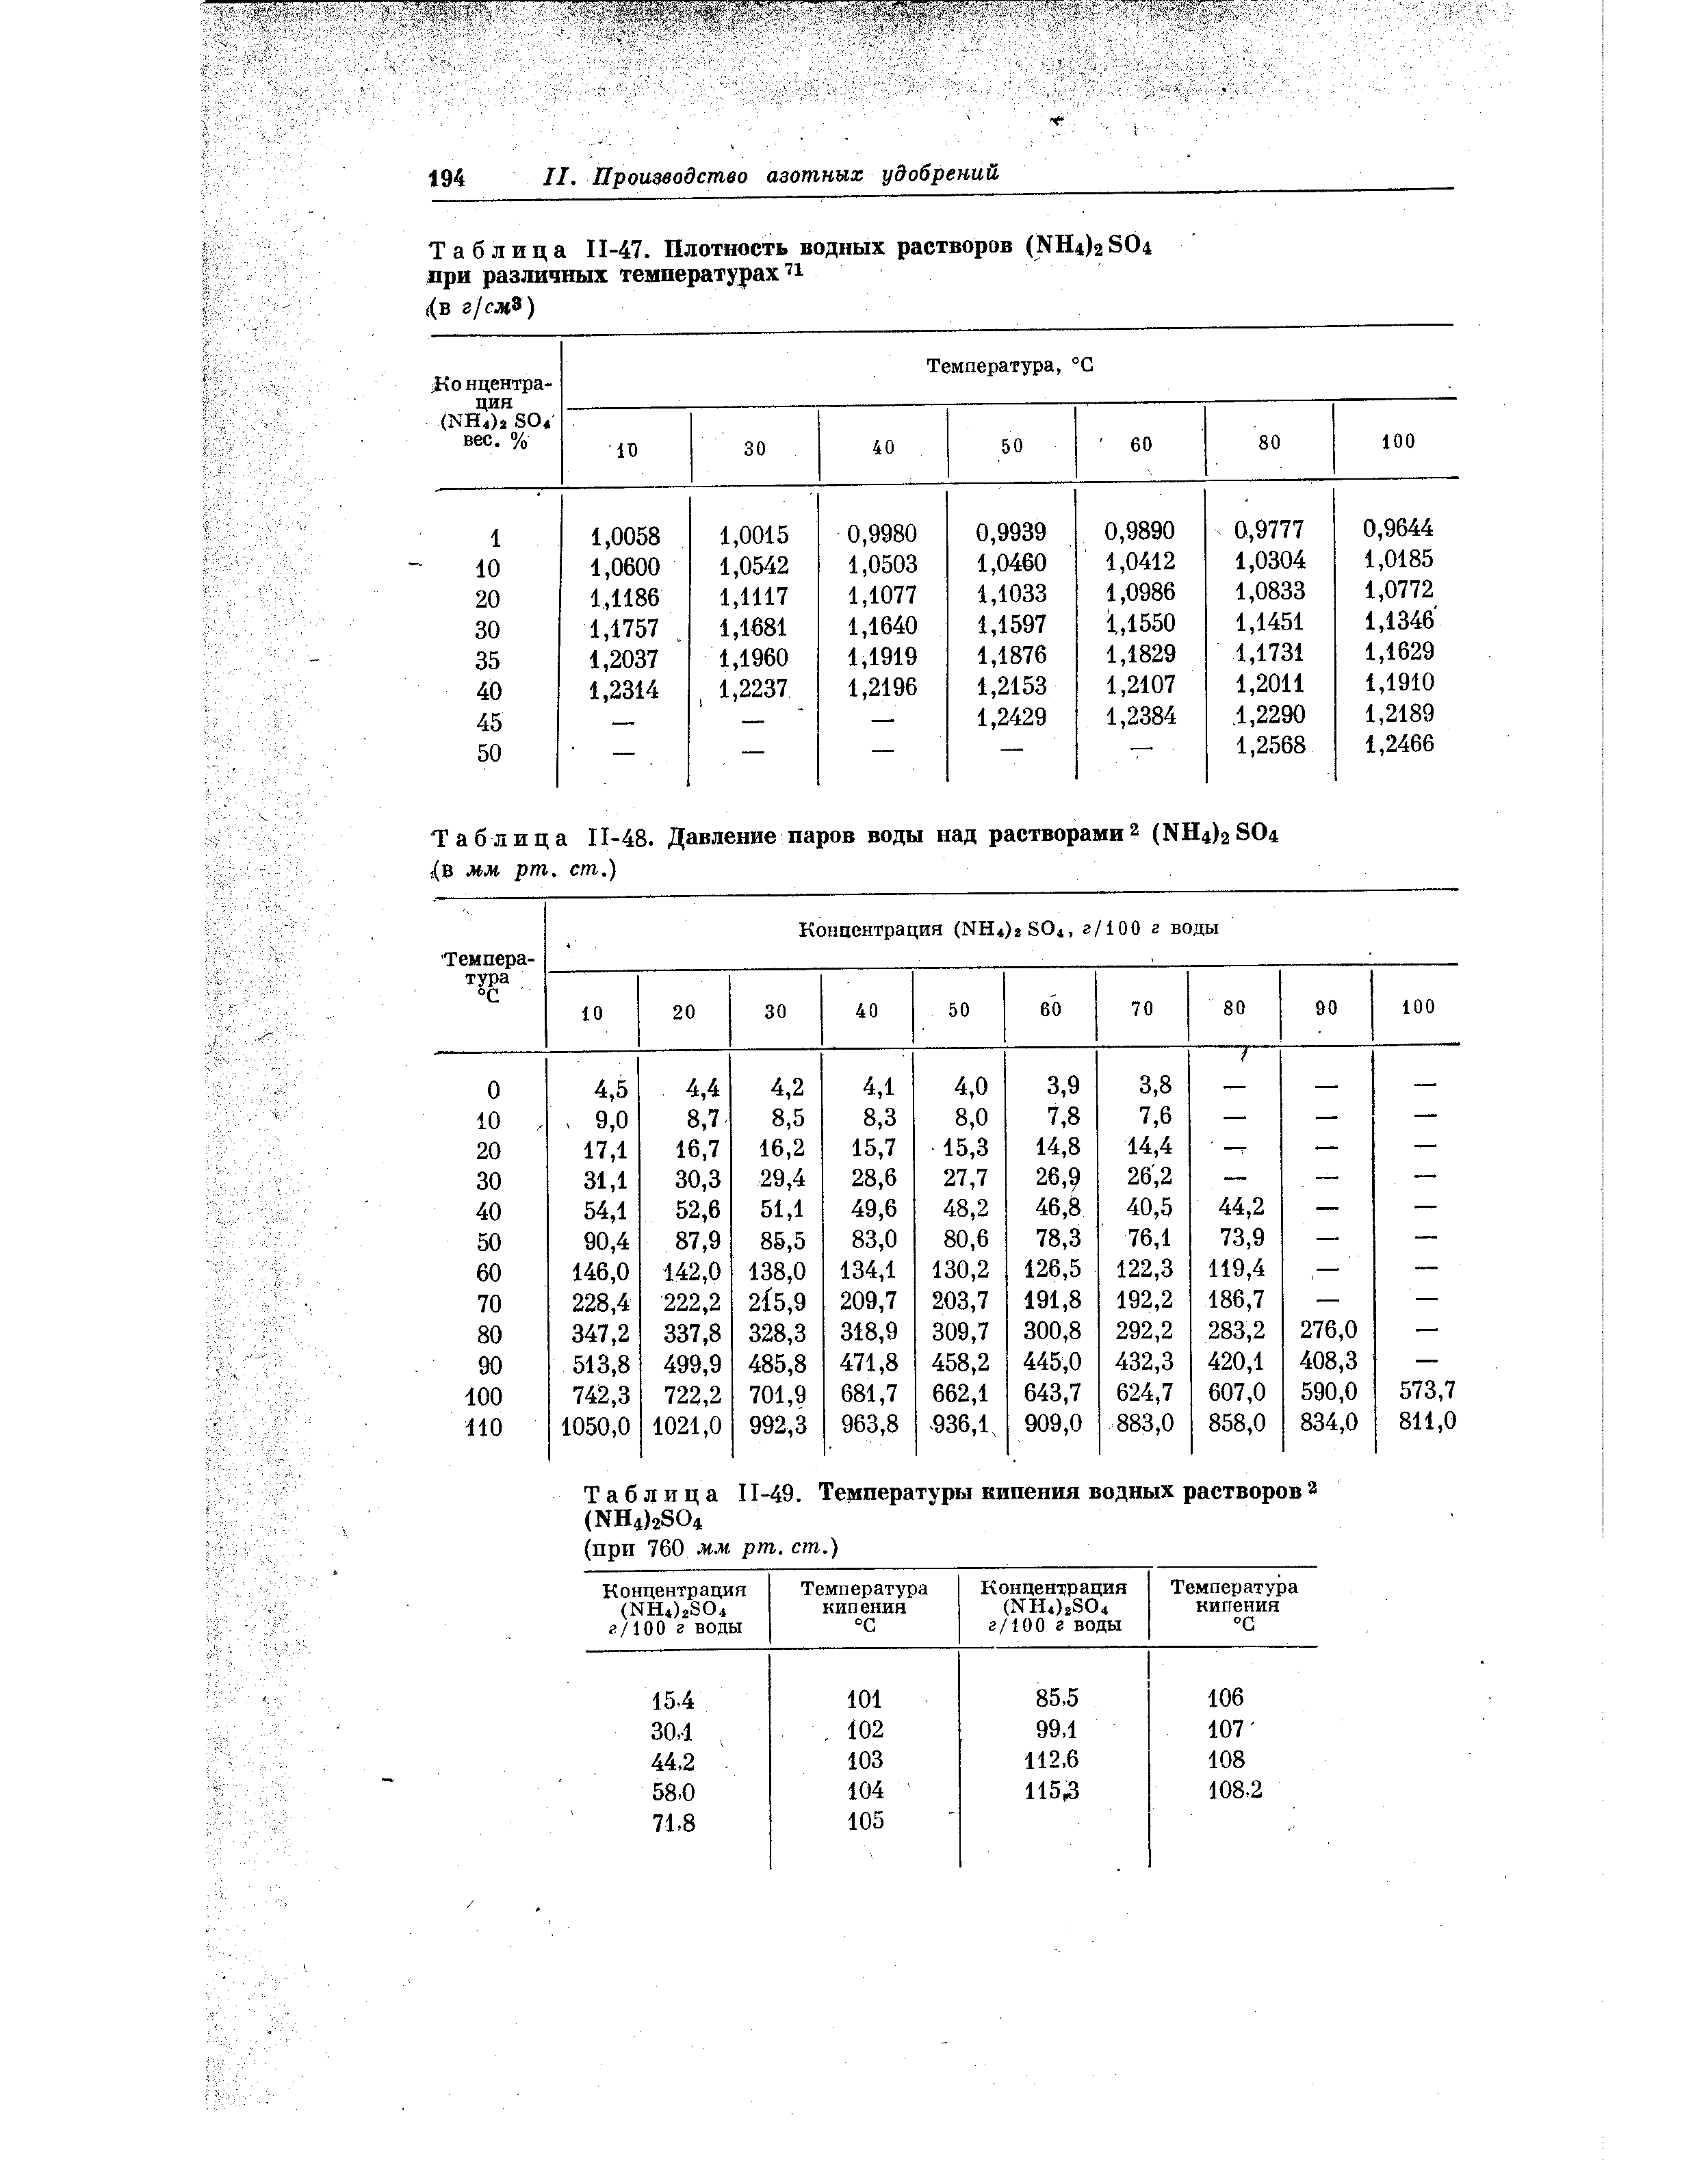 Таблица П-47. Плотность водных растворов (N114)2 804 при различных температурах 
